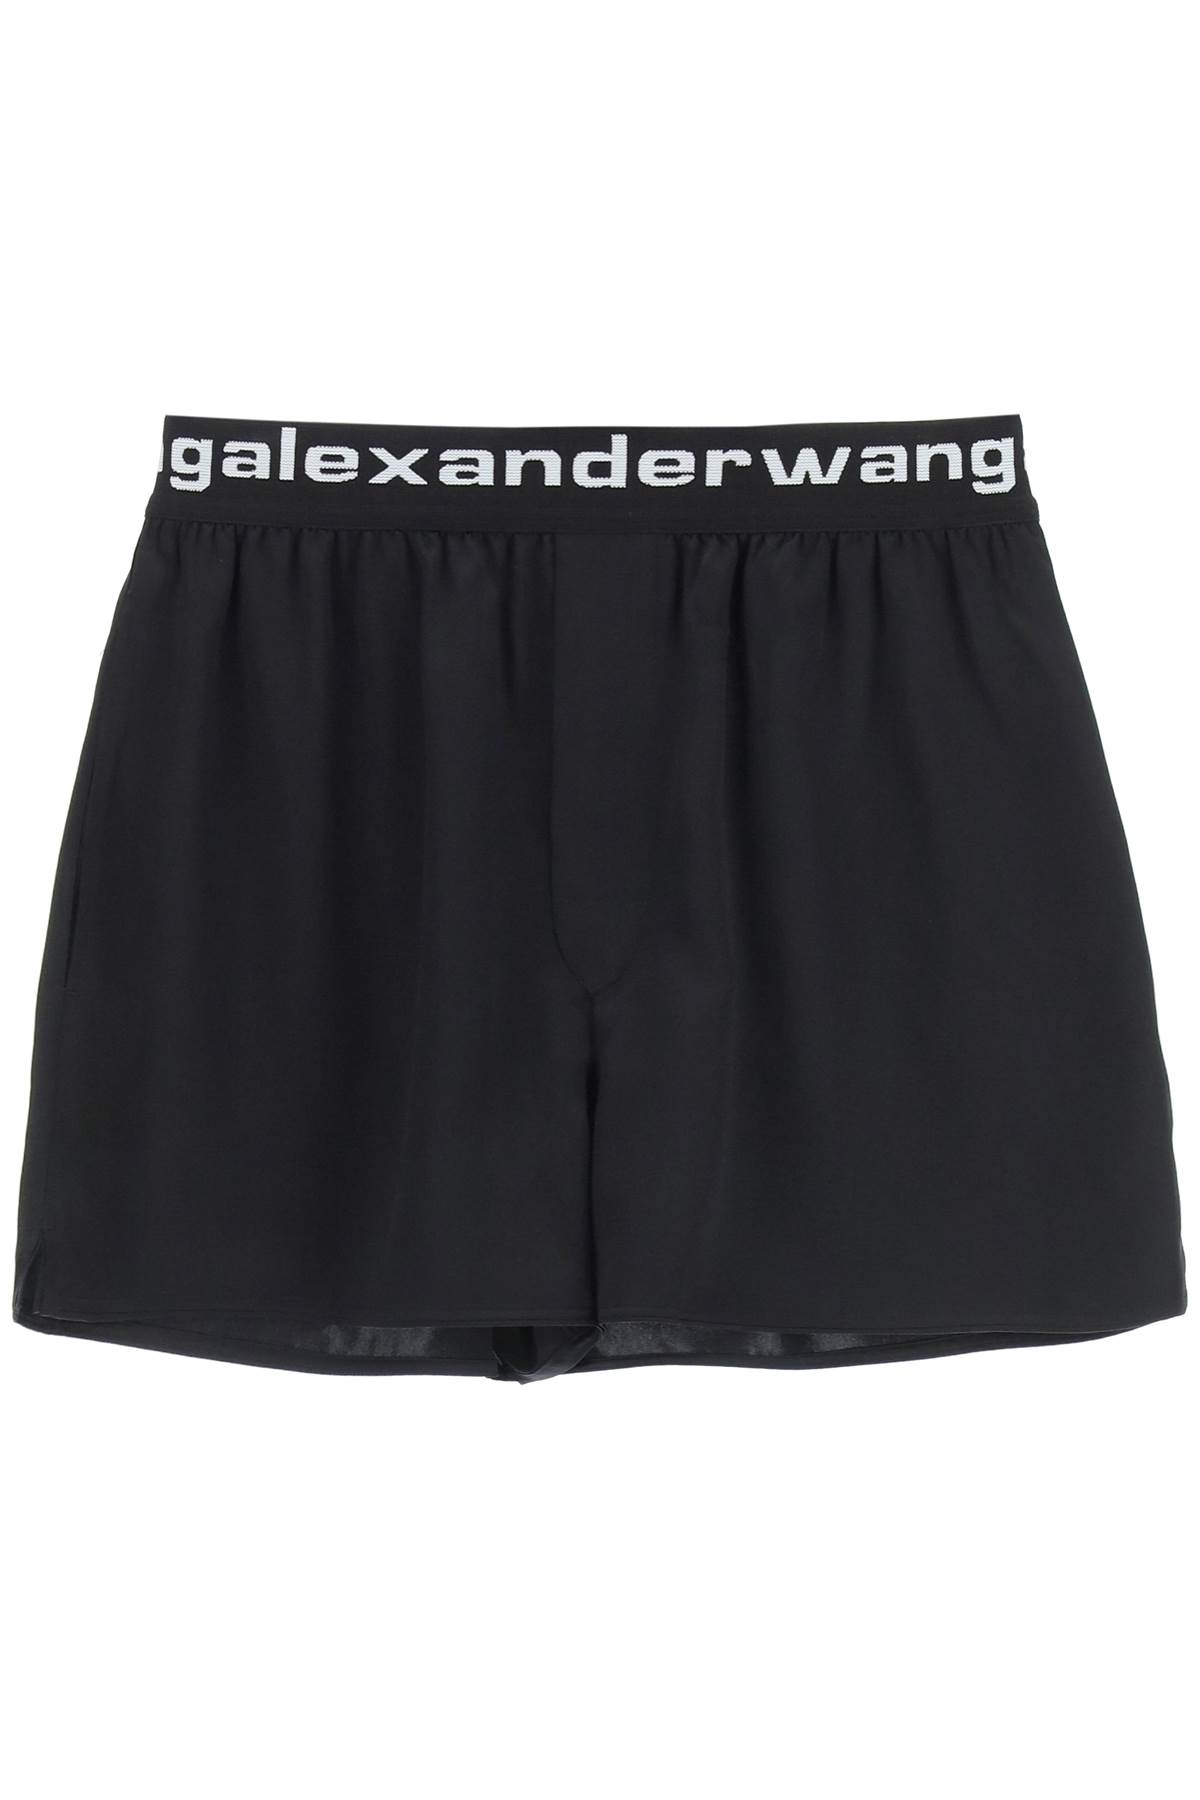 Alexander Wang Silk Charmeuse Boxer Shorts